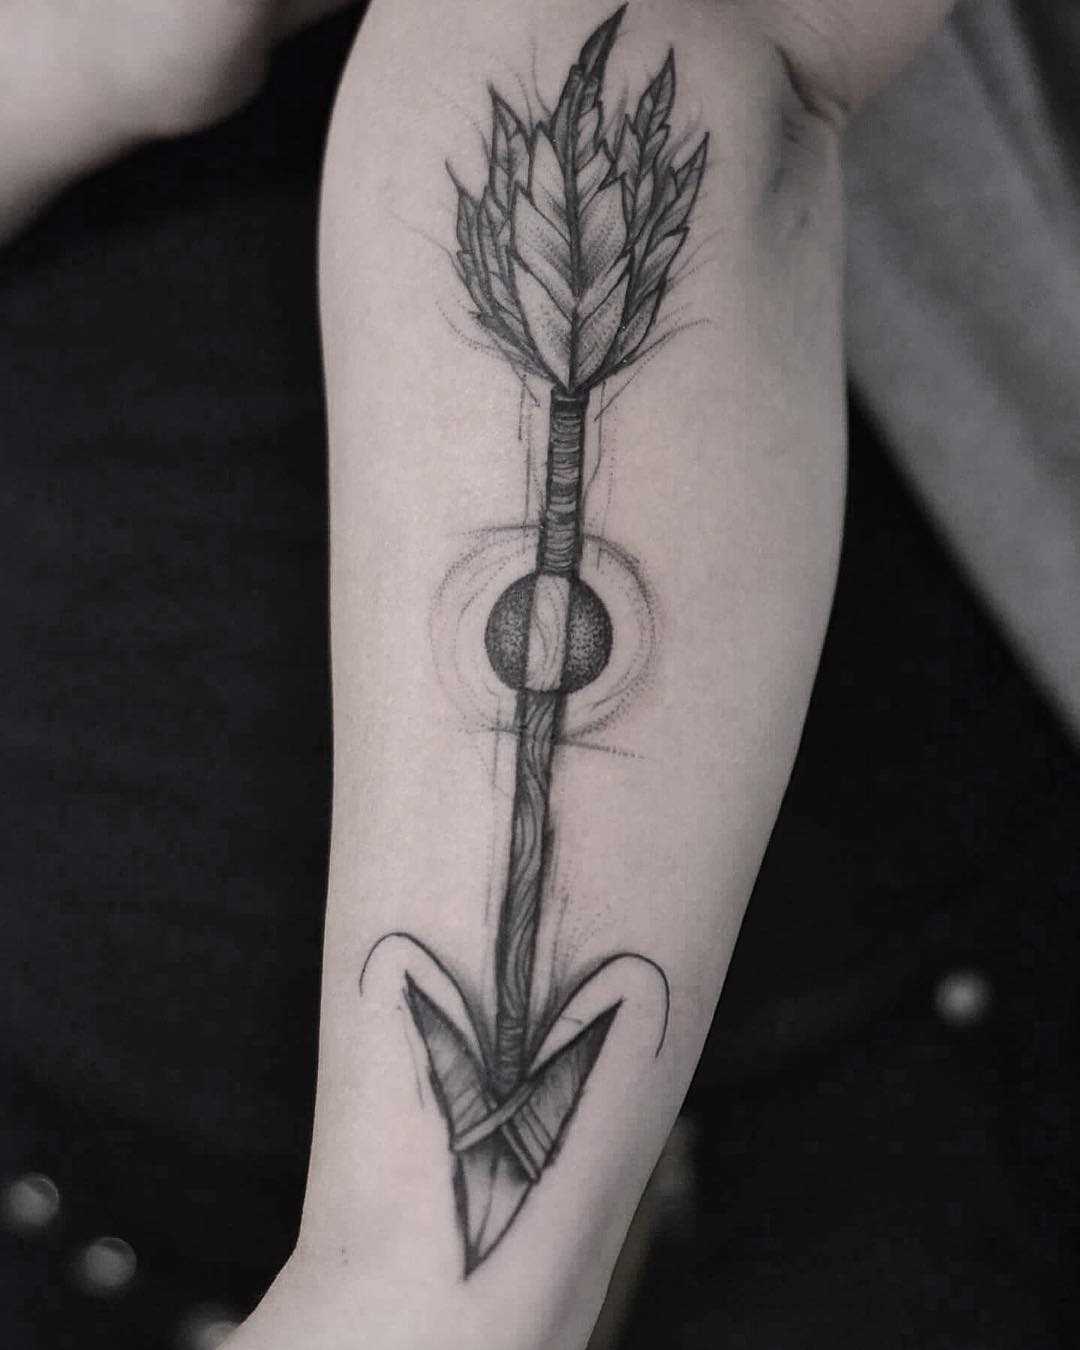 Tatuagem de flechas sobre a perna da mulher